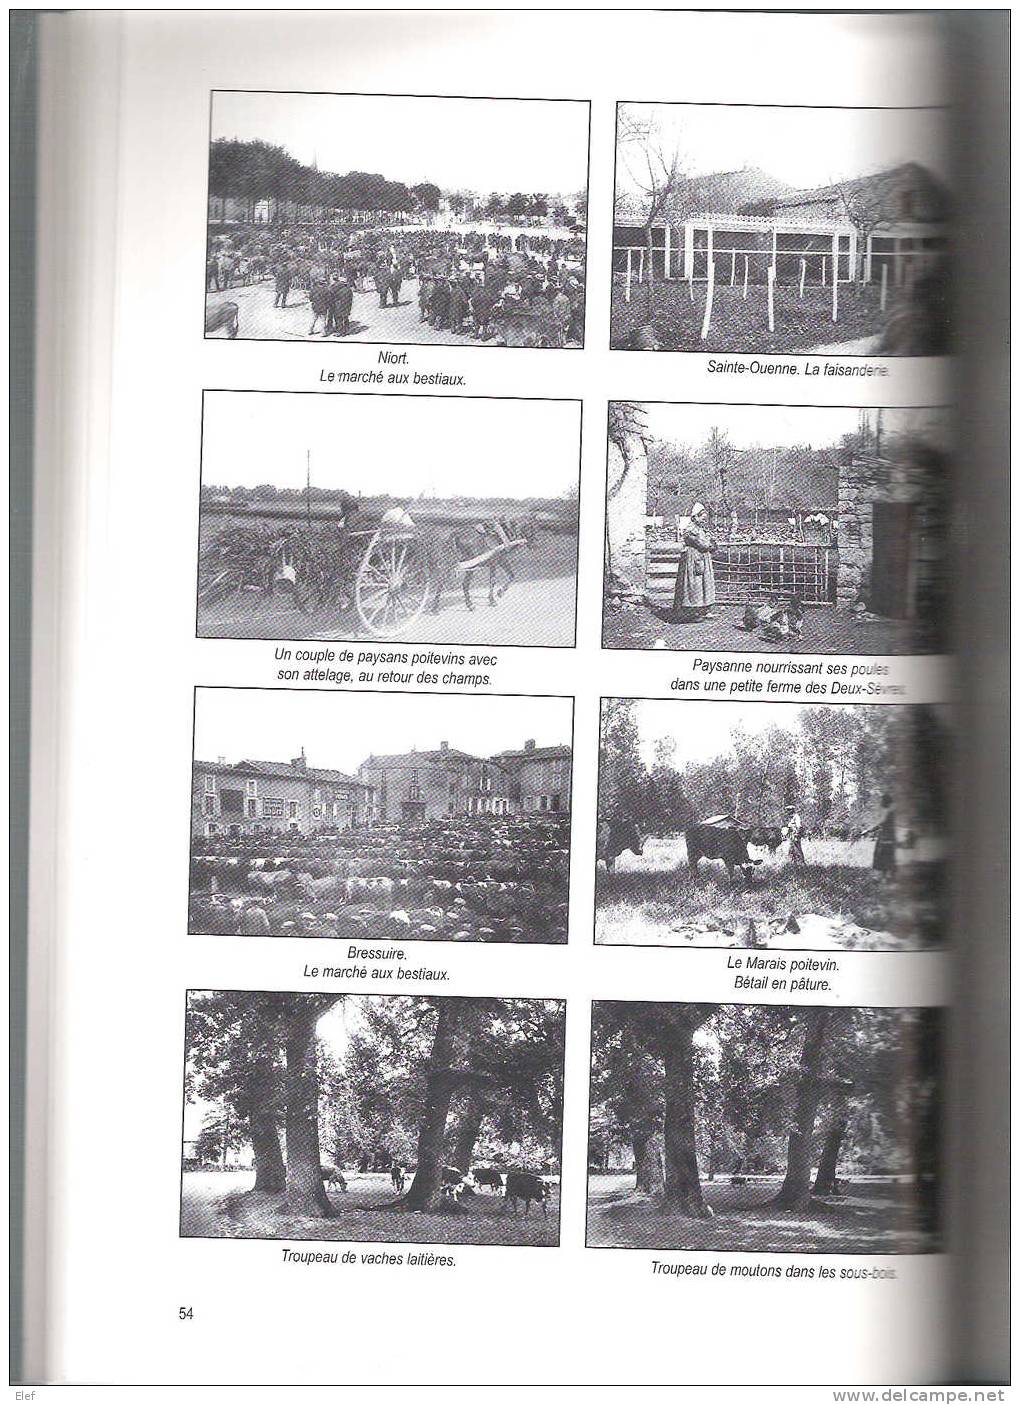 Livre"LES DEUX-SEVRES Au XIX E Siècle"Adolphe Joanne;Histoire+Dictionnaire Communes;Cartes Postales,Photos.etc;144 P,SUP - Boeken & Catalogi